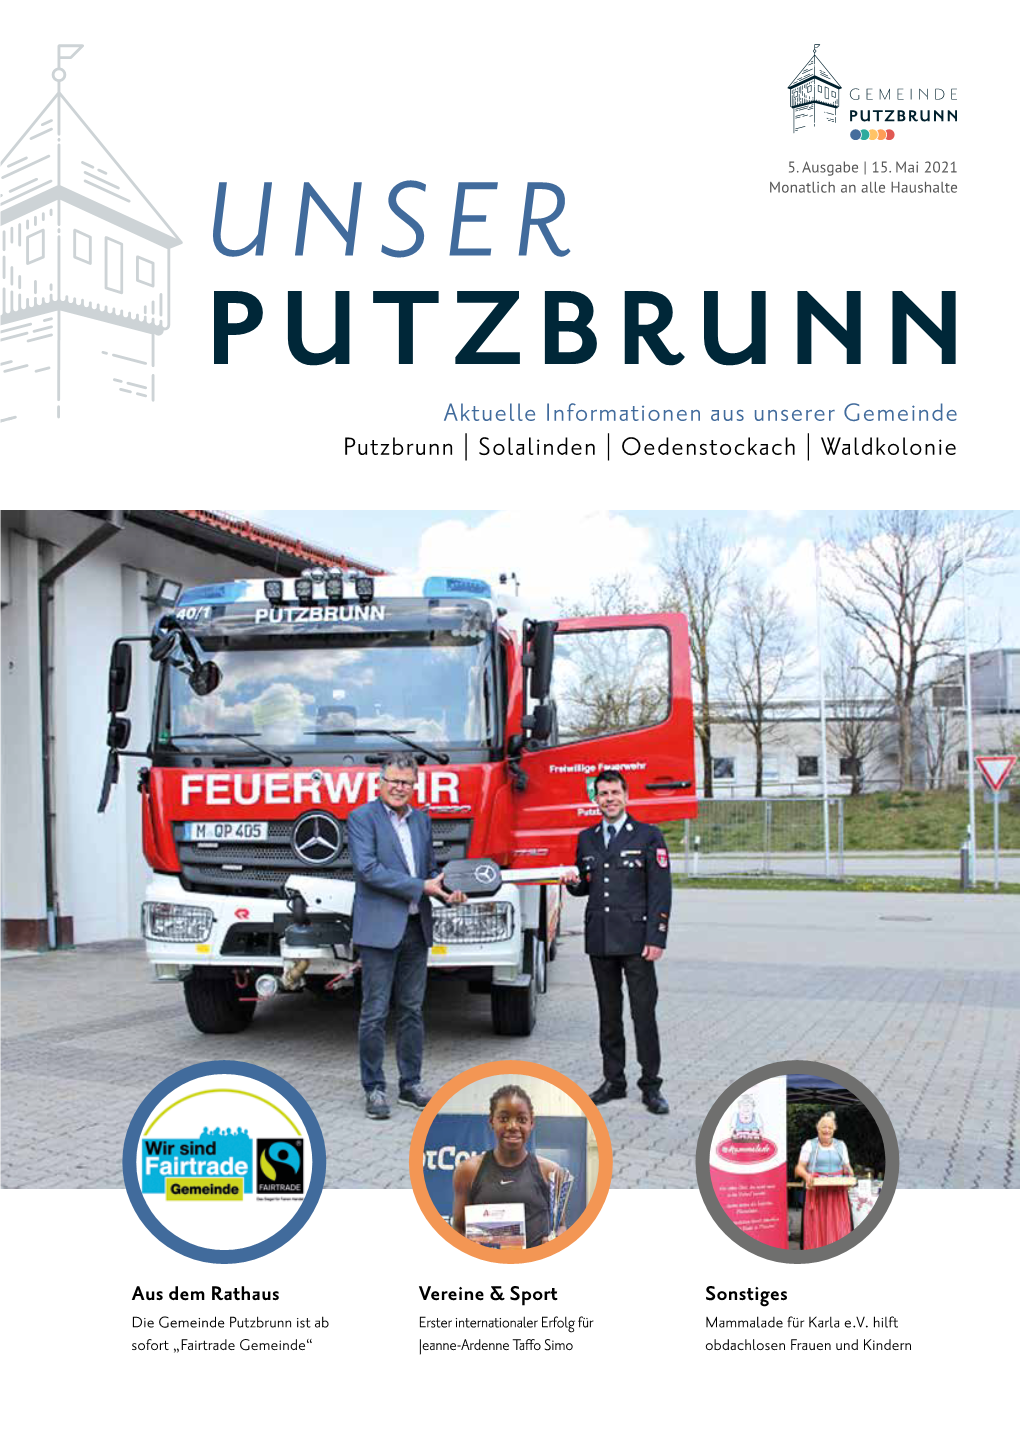 "Unser Putzbrunn"